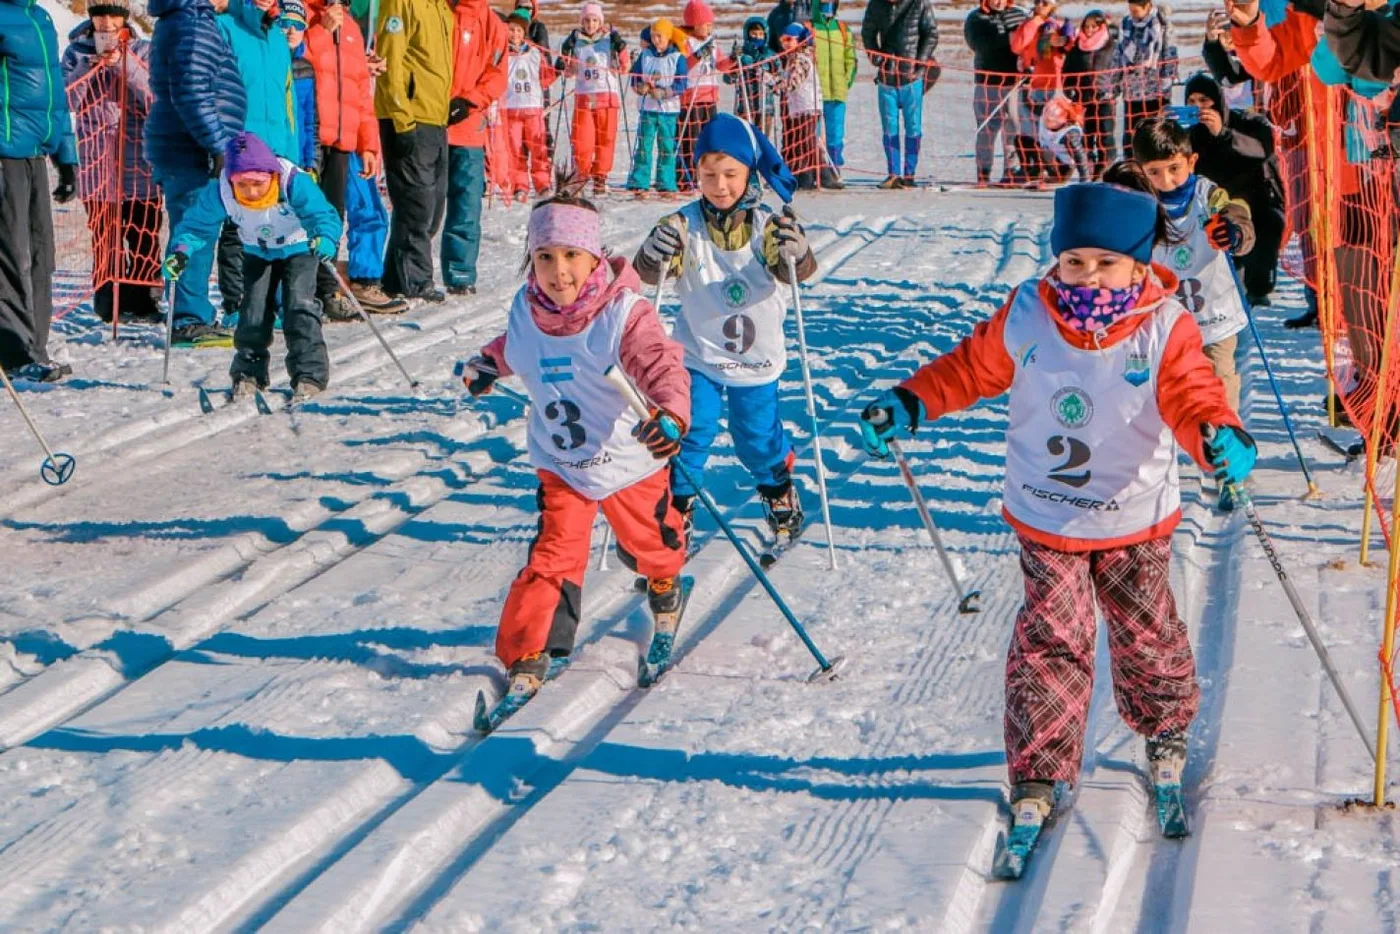 Se realizará el campeonato fueguino de esquí de fondo